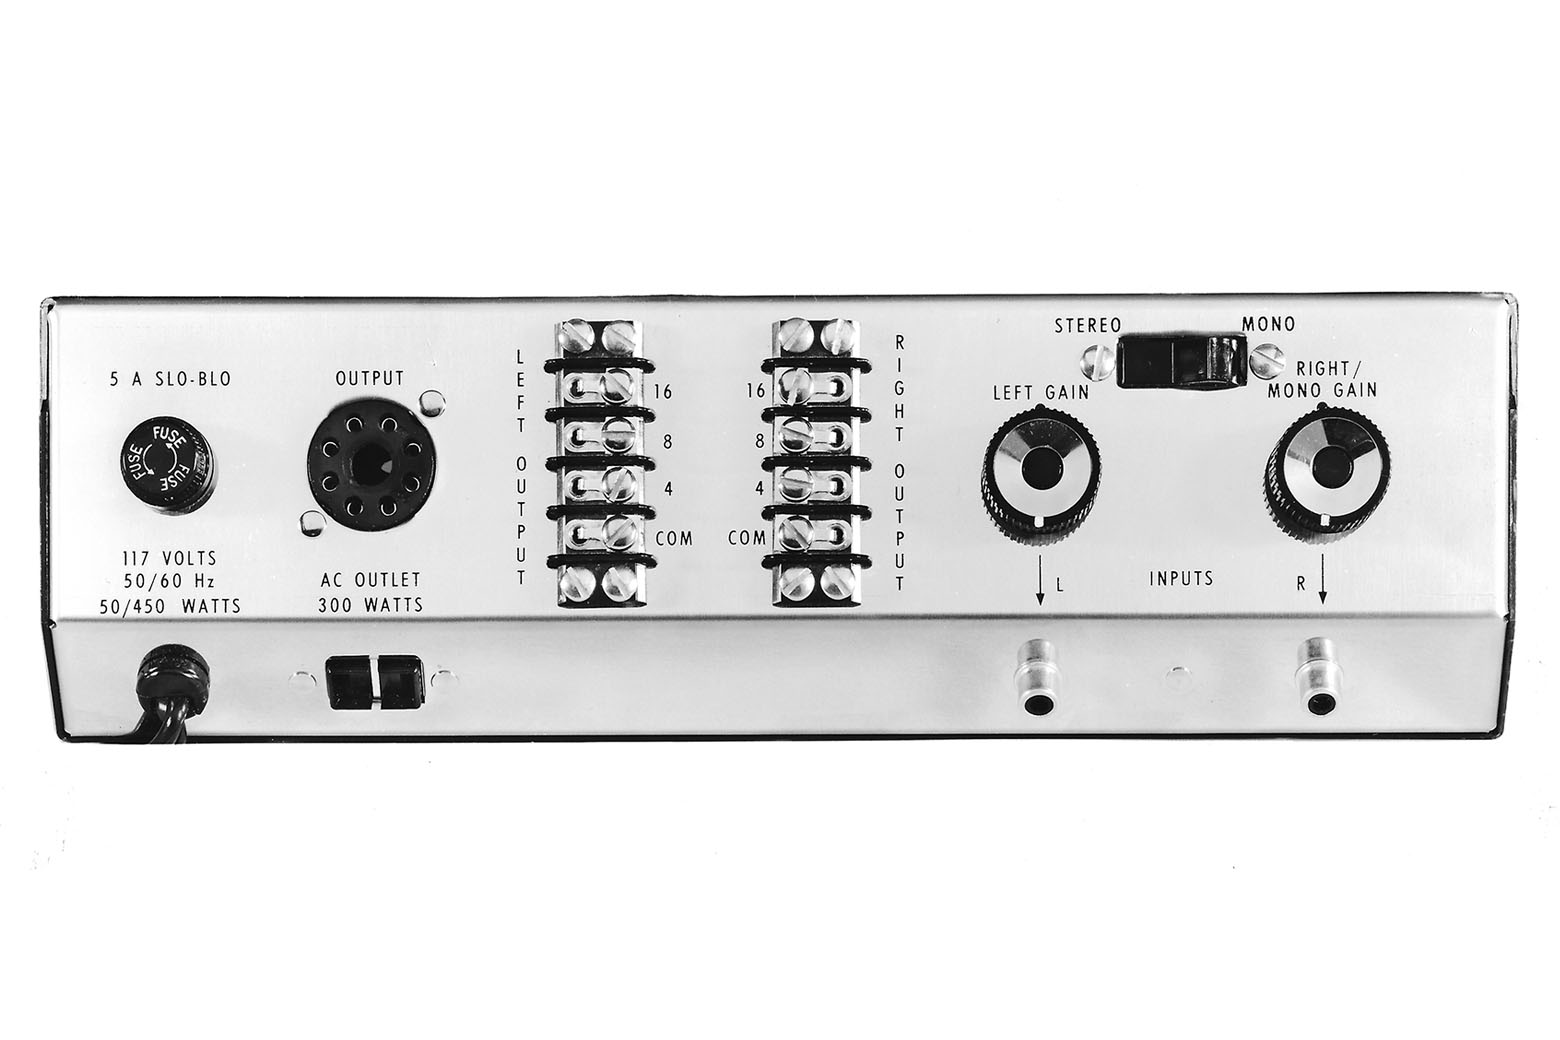 McIntosh MC2100 Amplifier